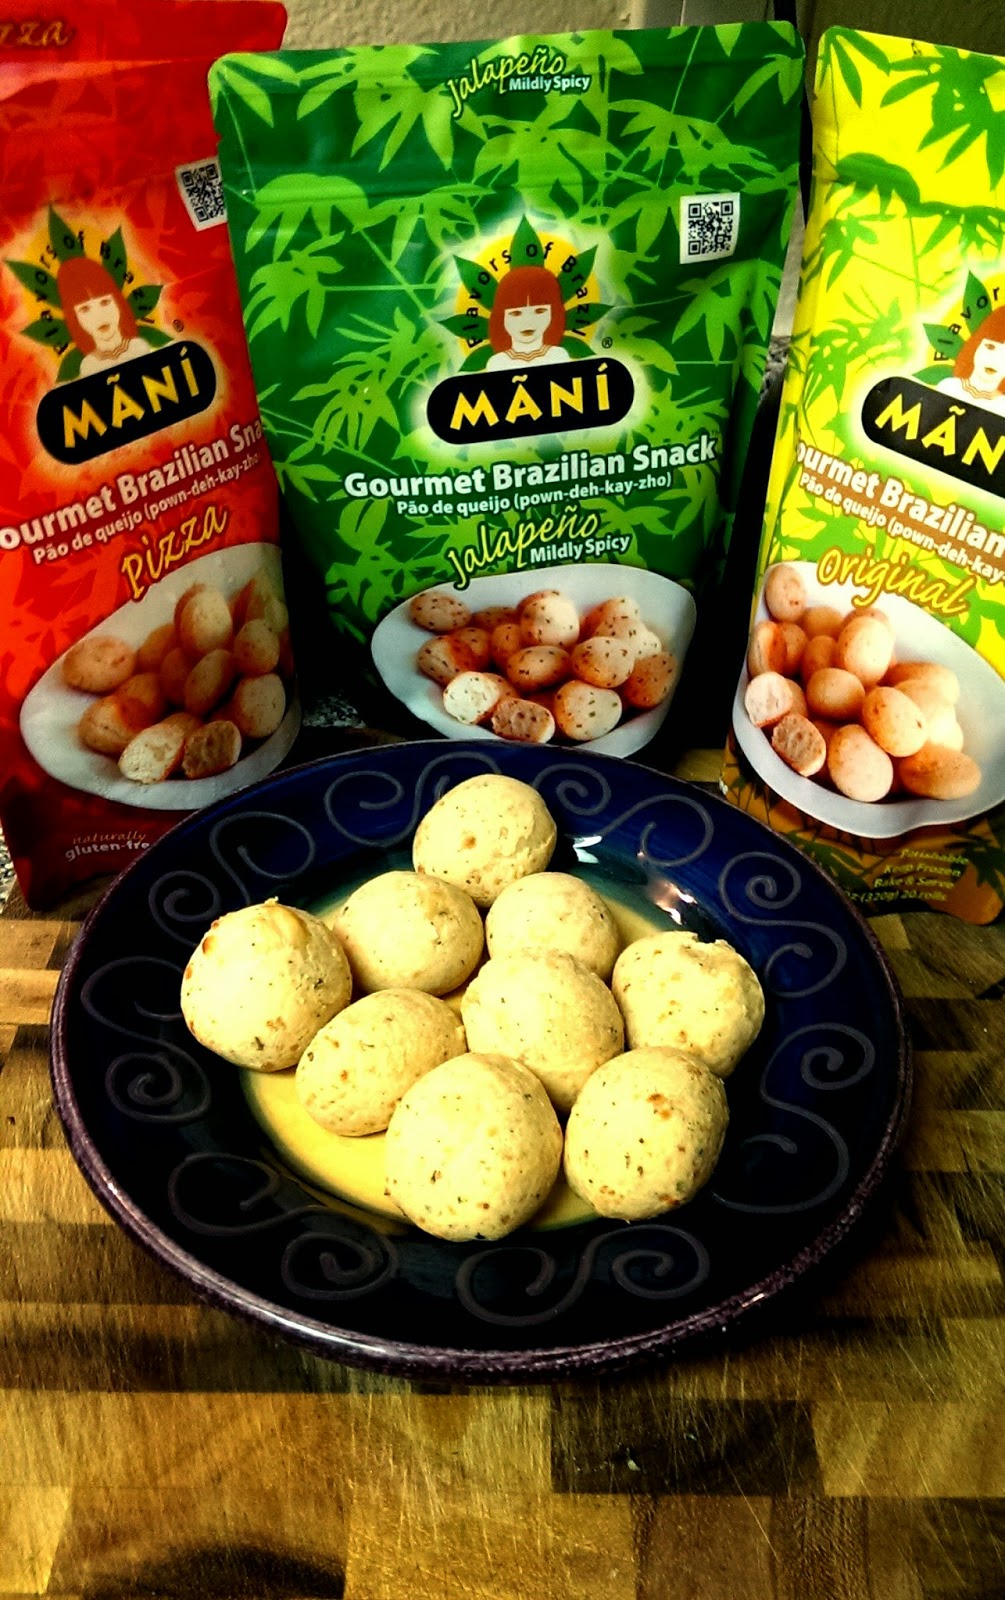 Mani Gluten - Free Brazilian Cheese Bread Review